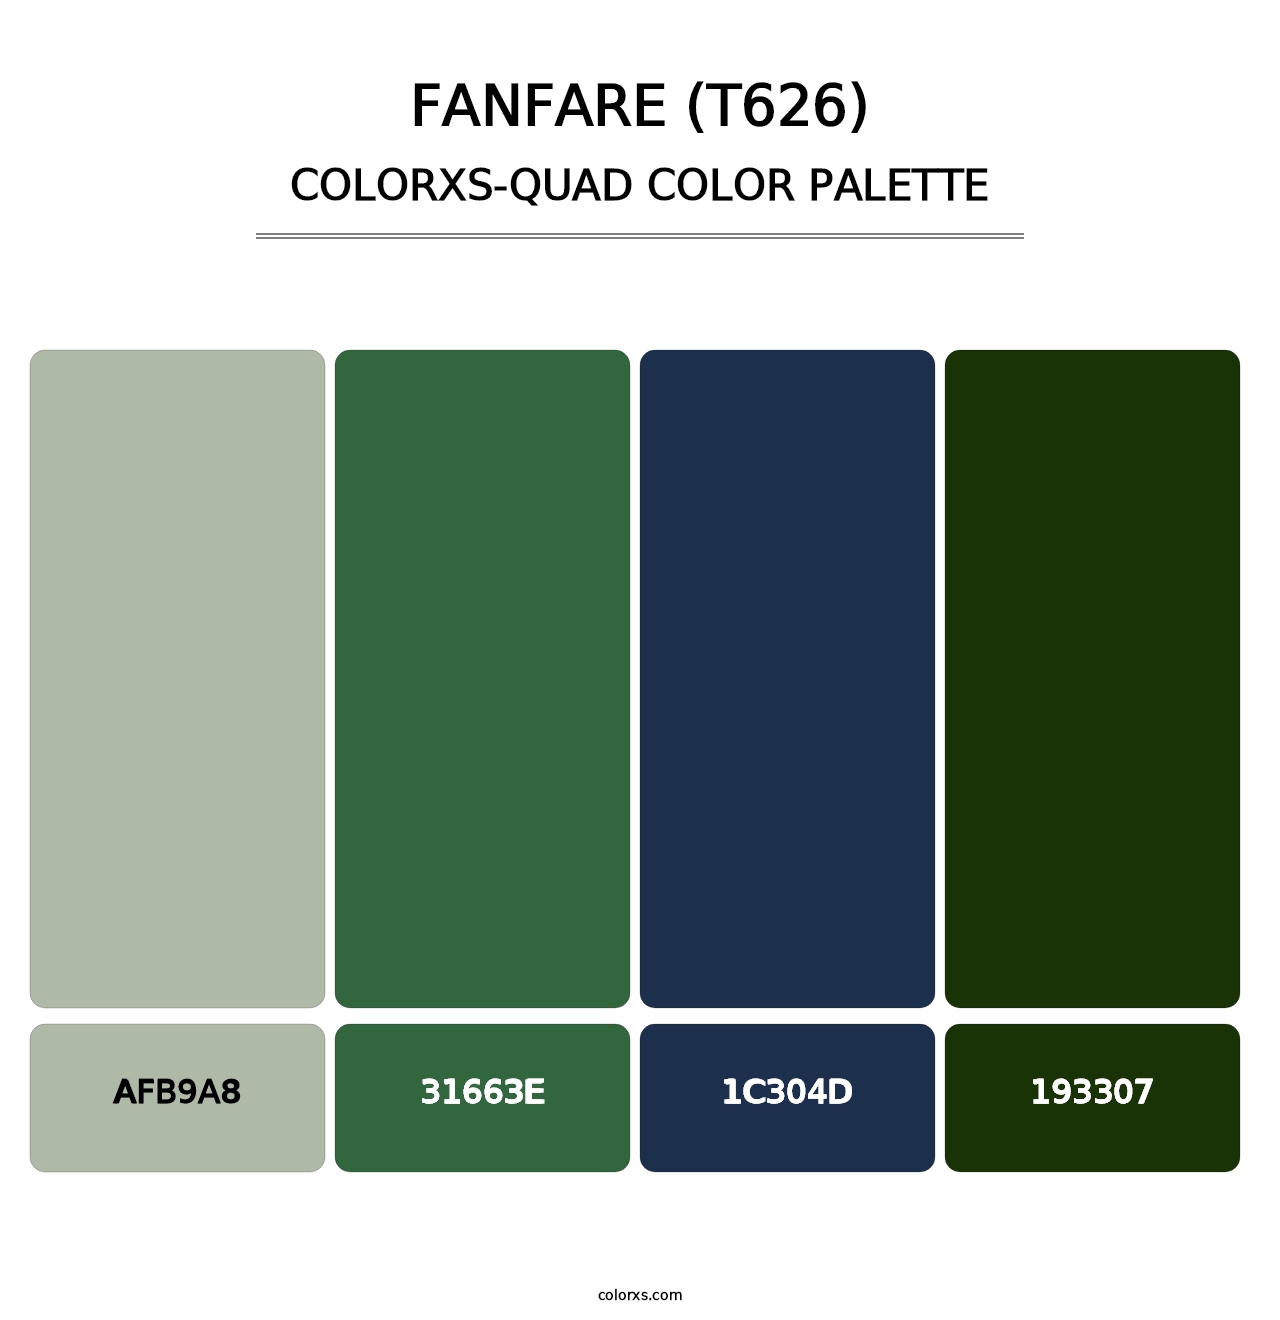 Fanfare (T626) - Colorxs Quad Palette